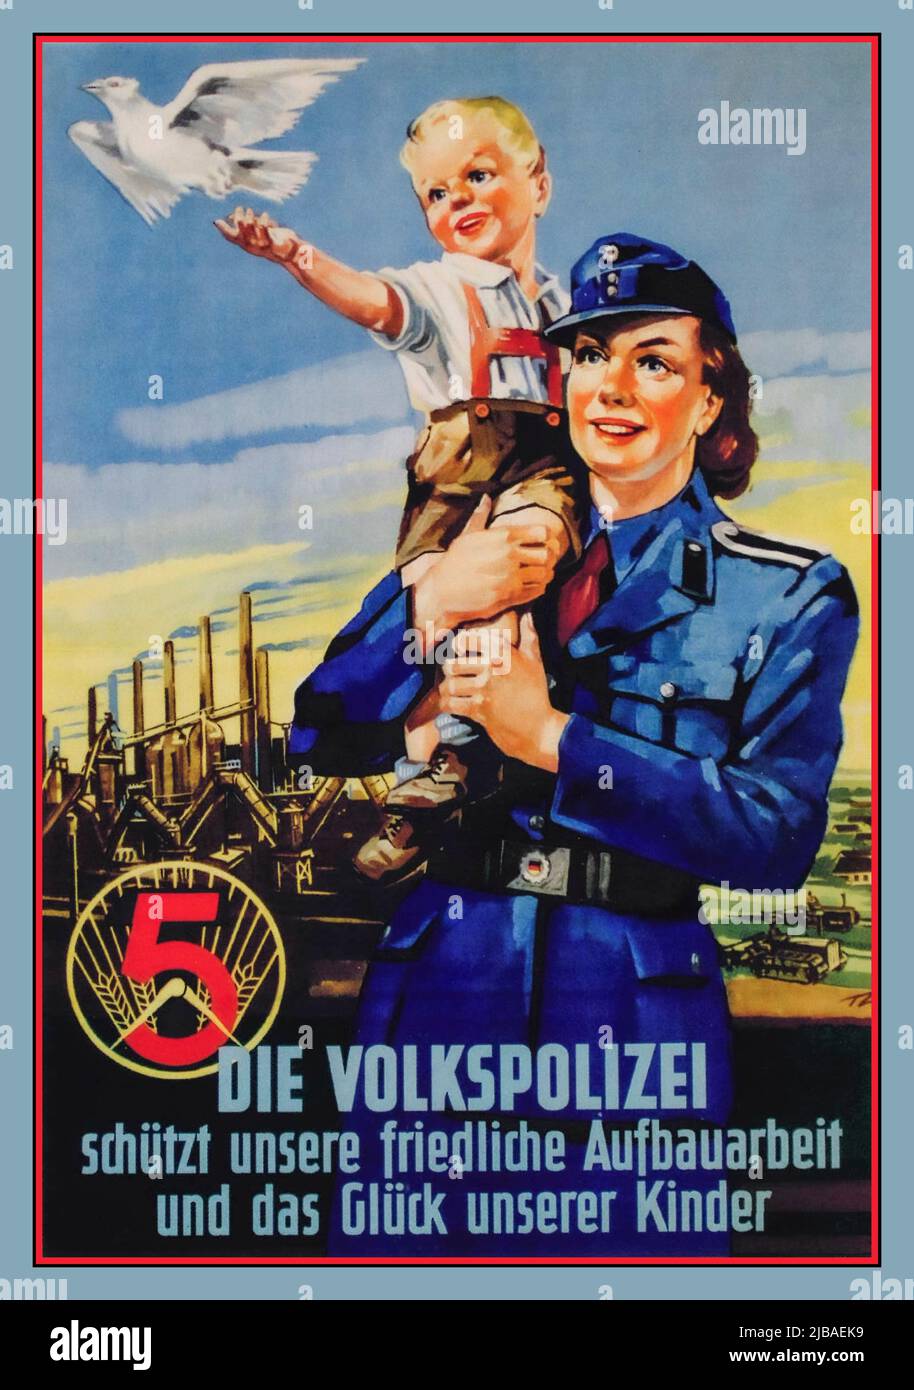 DIE VOLKSPOLIZEI, 1954 DDR-Propagandaplakat für die Volkspolizei. Die Volkspolizei schützt unsere friedliche Bauarbeit und das Glück unserer Kinder' die volkspolizei schützt unsere freundliche Aufbauarbeit und das gluck unserer Kinder Stockfoto